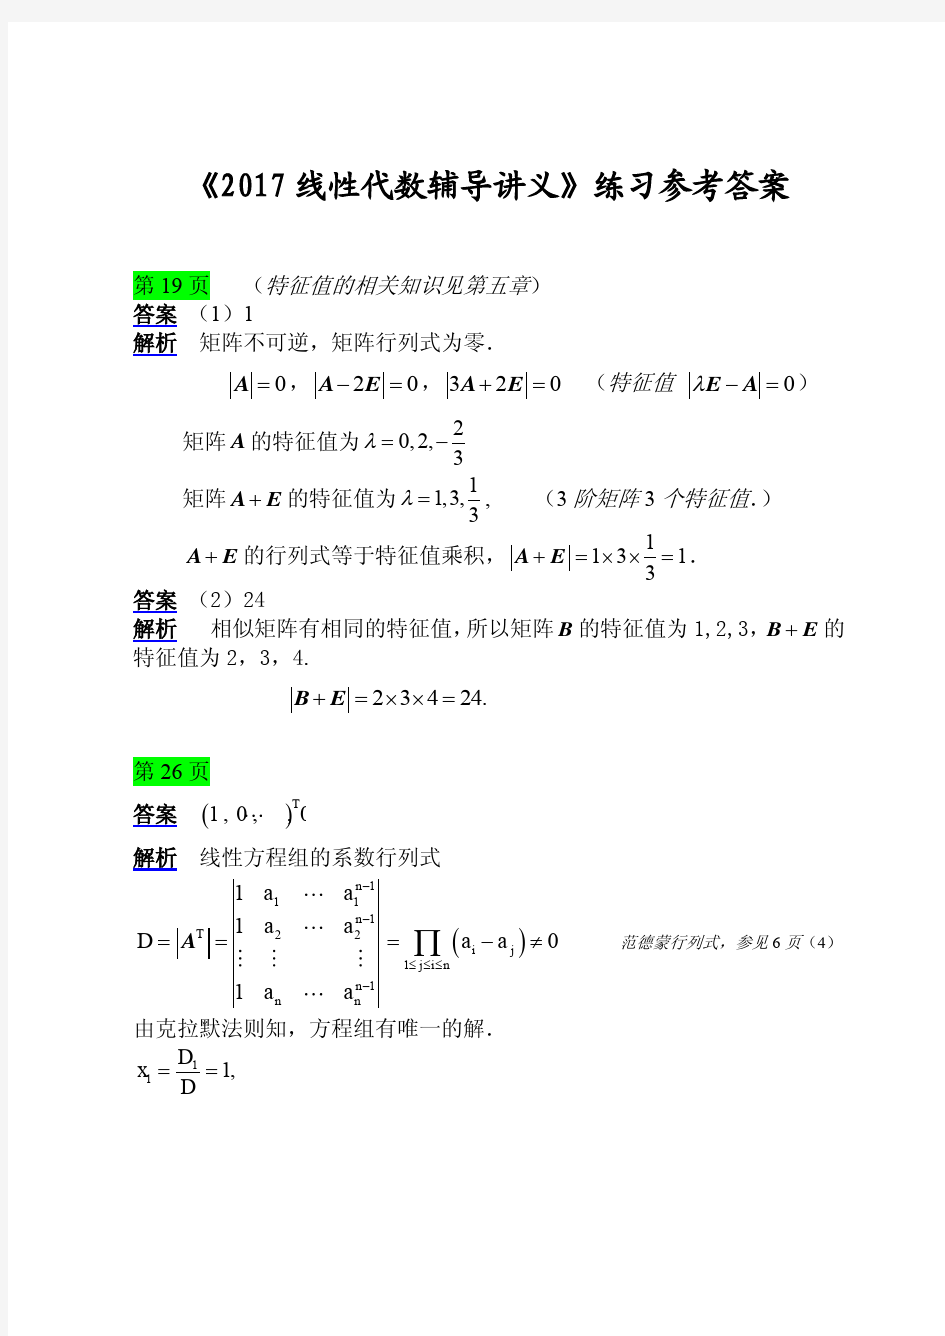 【考研数学】2017版线代讲义练习题解答